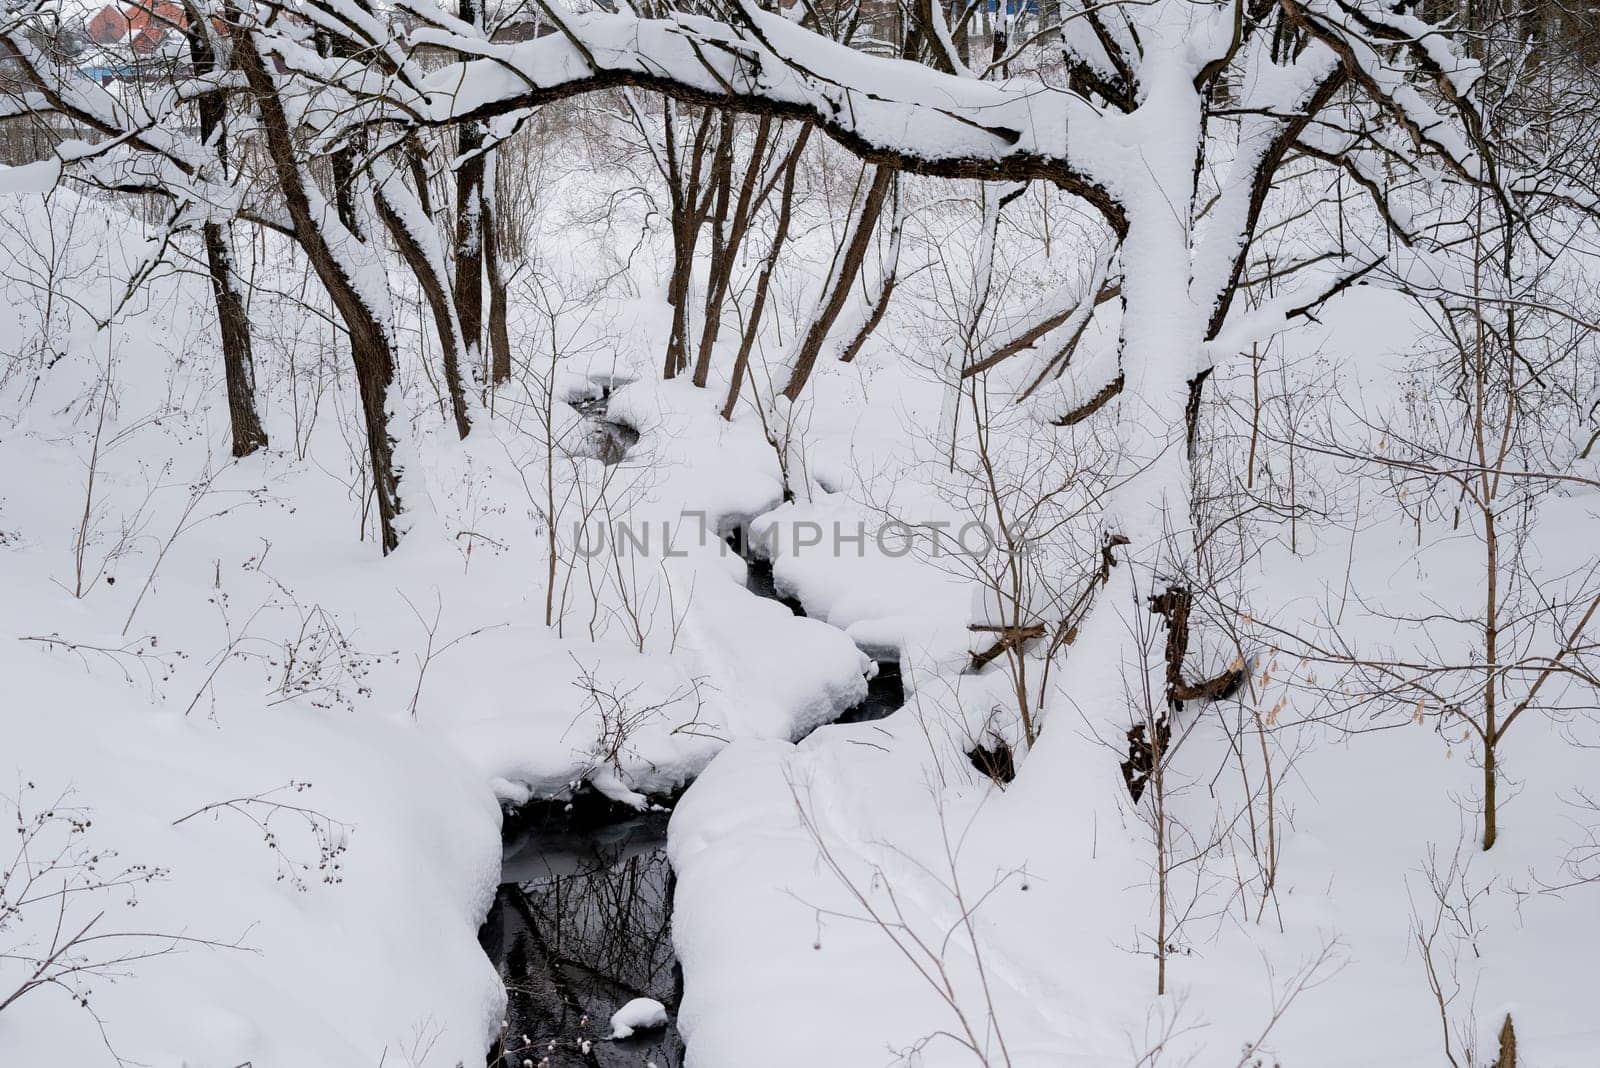 winter stream flowing between snowy trees